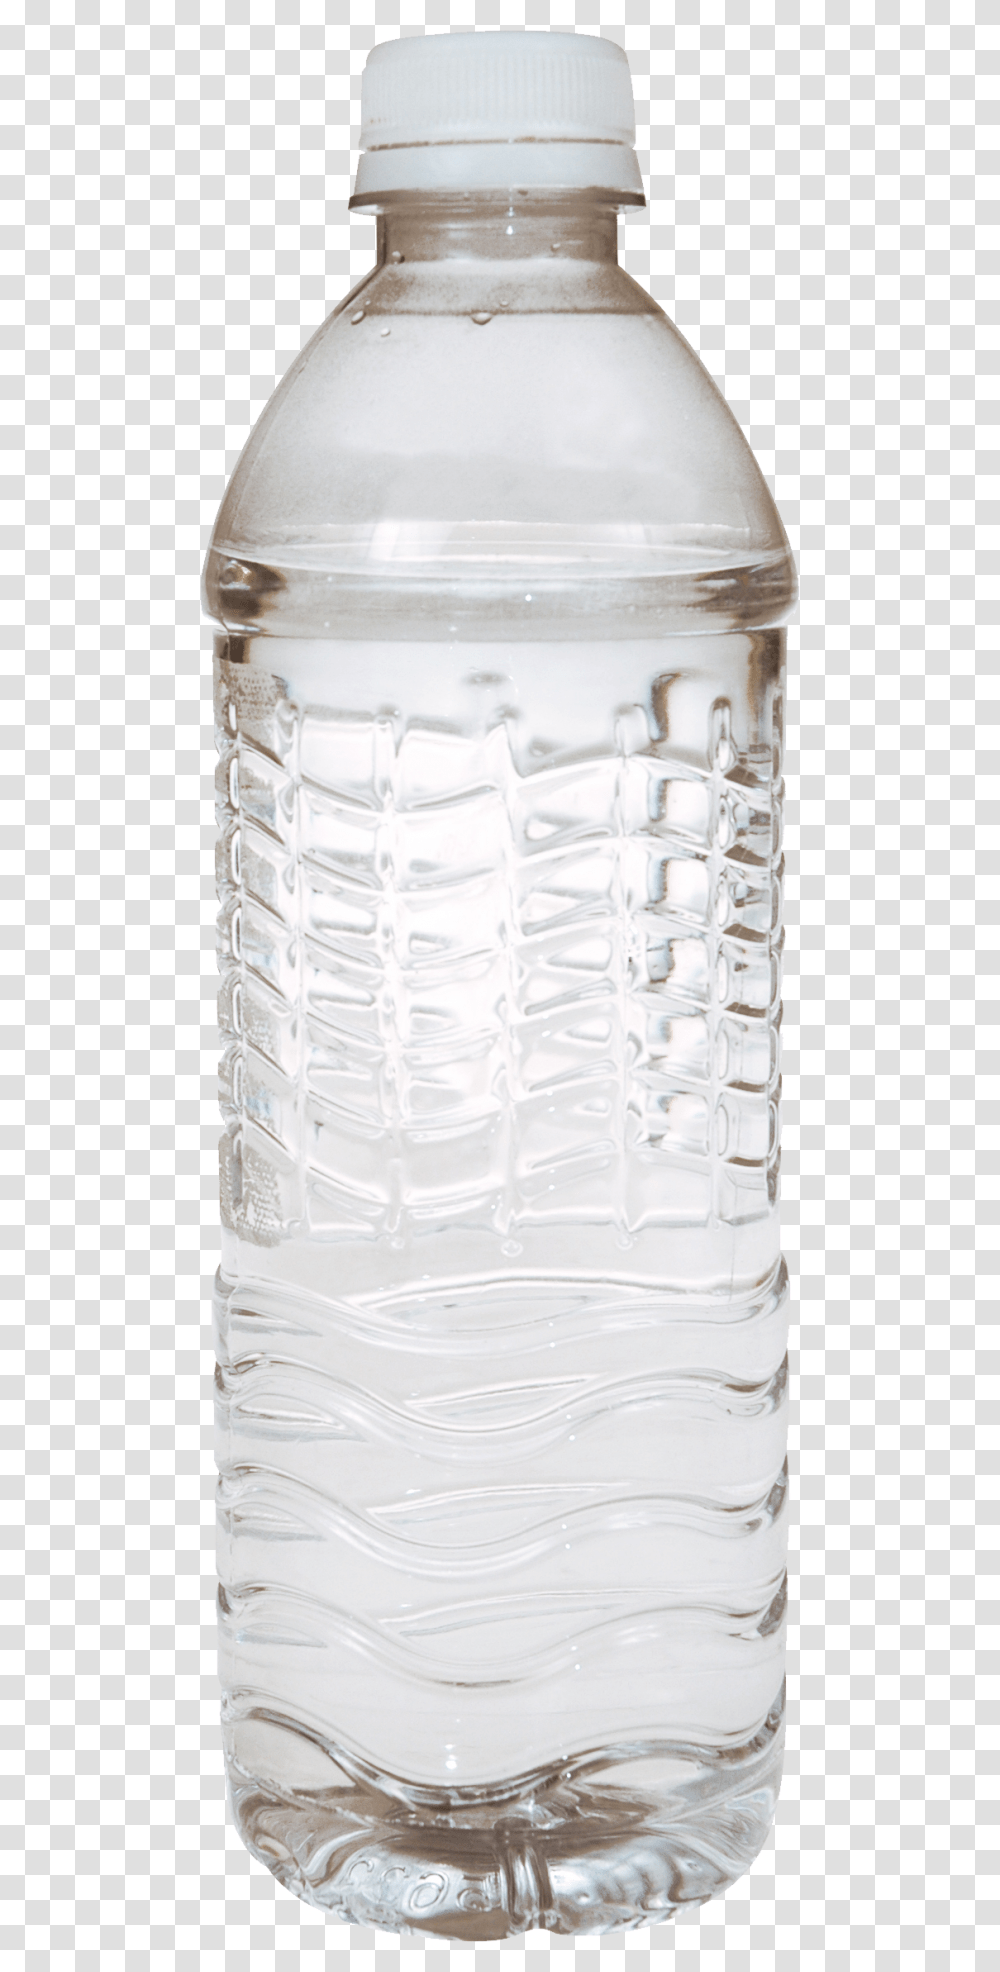 Water Bottle Free Download, Milk, Beverage, Drink, Shaker Transparent Png